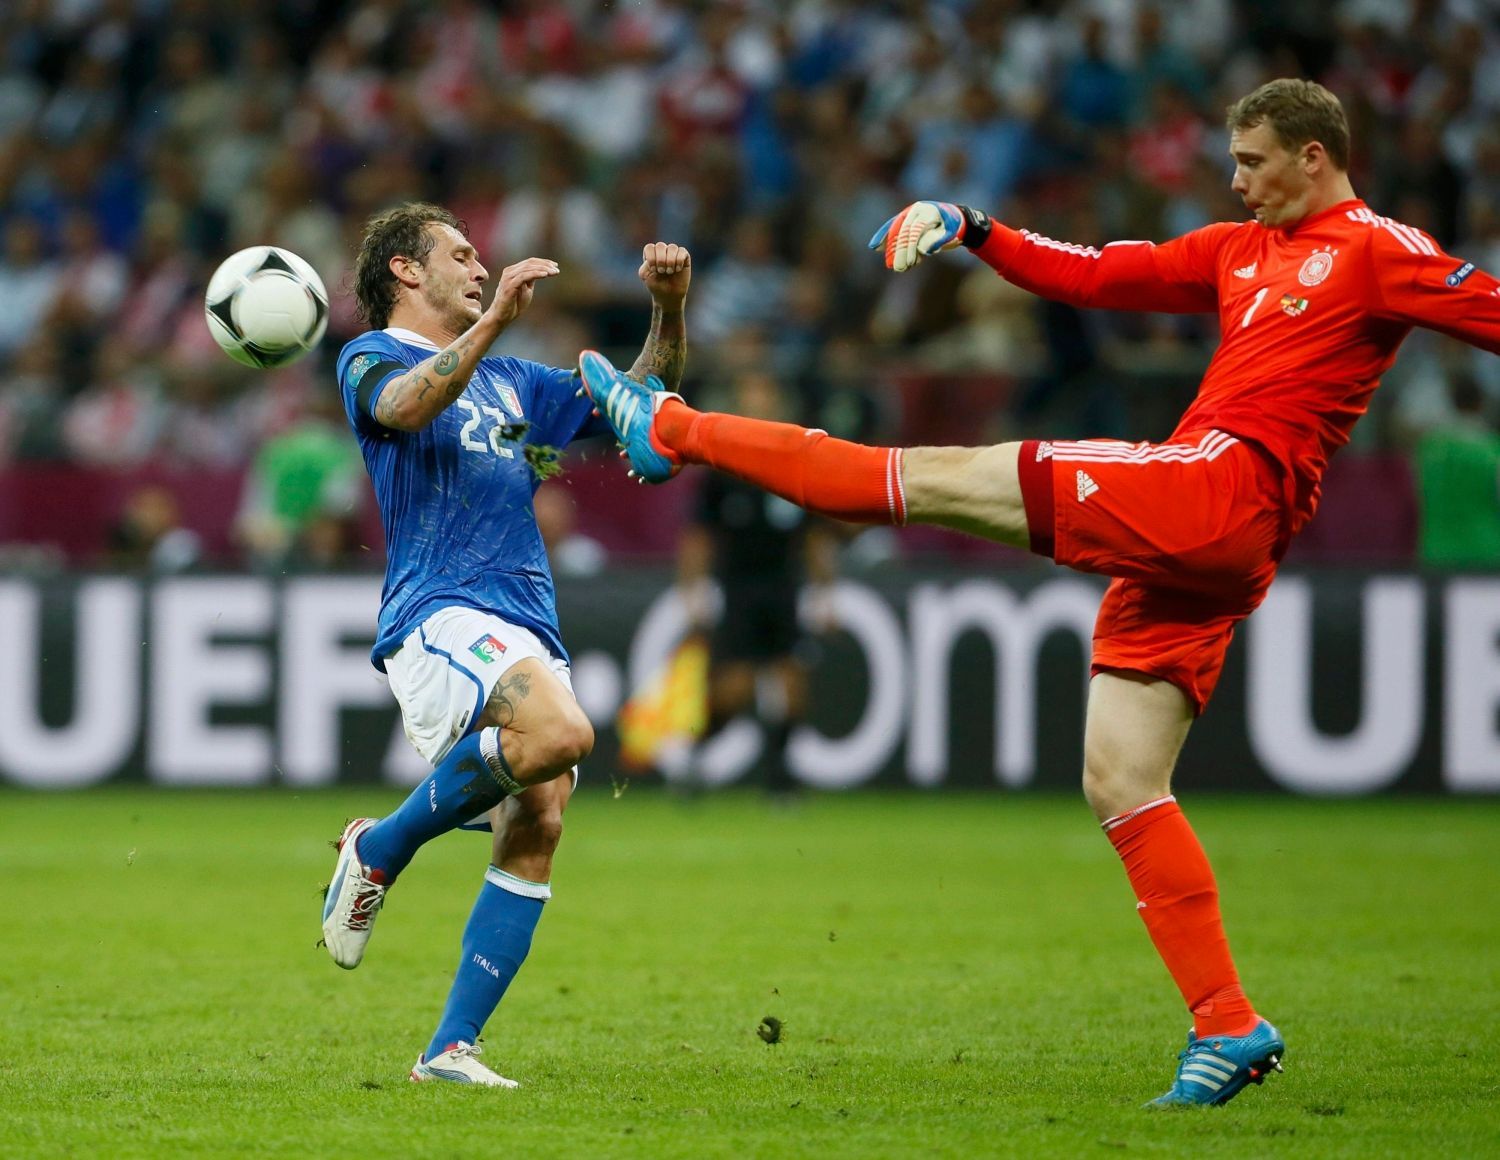 Alessandro Diamanti nabíhá na kopačku Manuela Neuera v semifinálovém utkání Eura 2012 mezi Německem a Itálií.